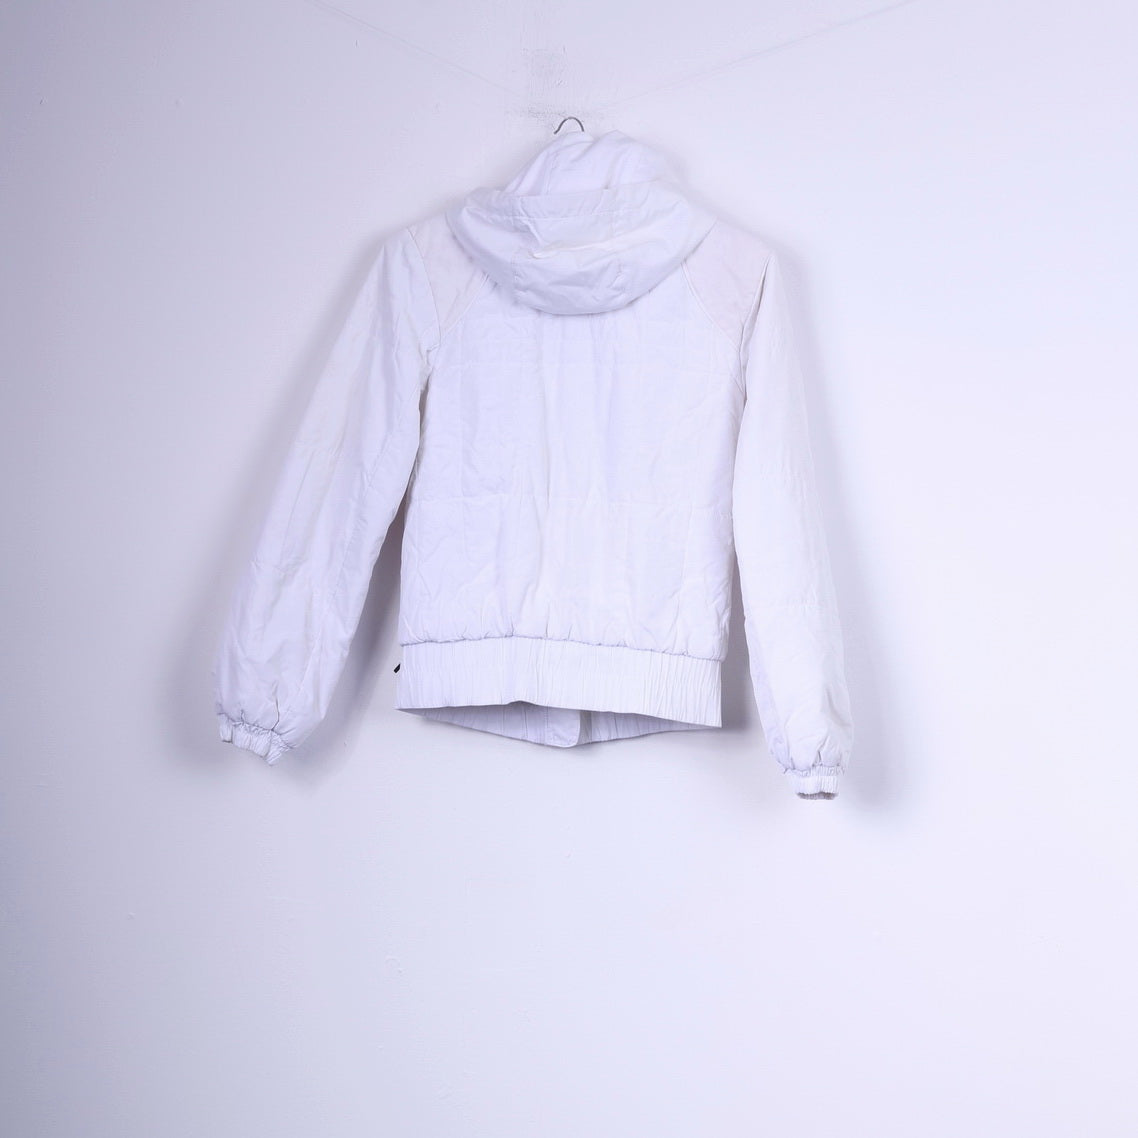 Nike Womens S Jacket Paded White Hooded Full Zipper Sportswear